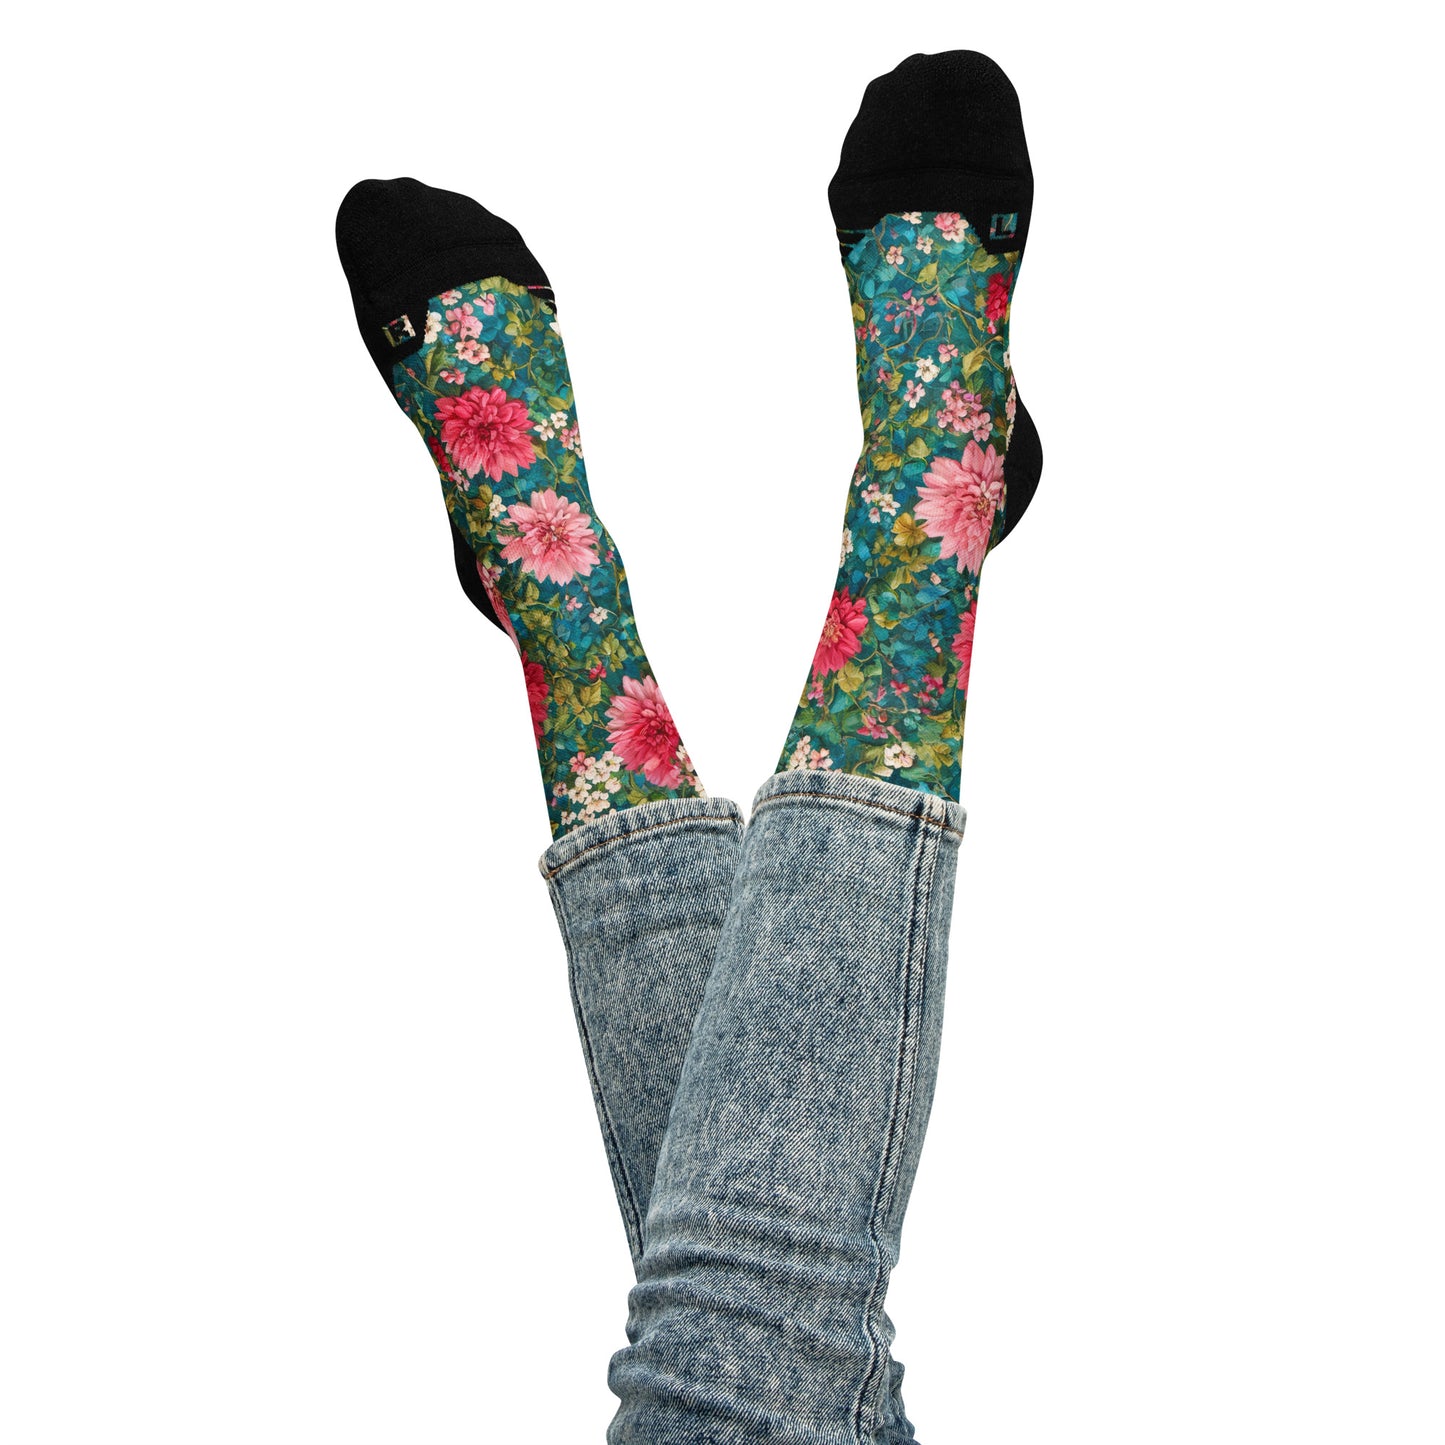 Vintage Flowers Basketball socks